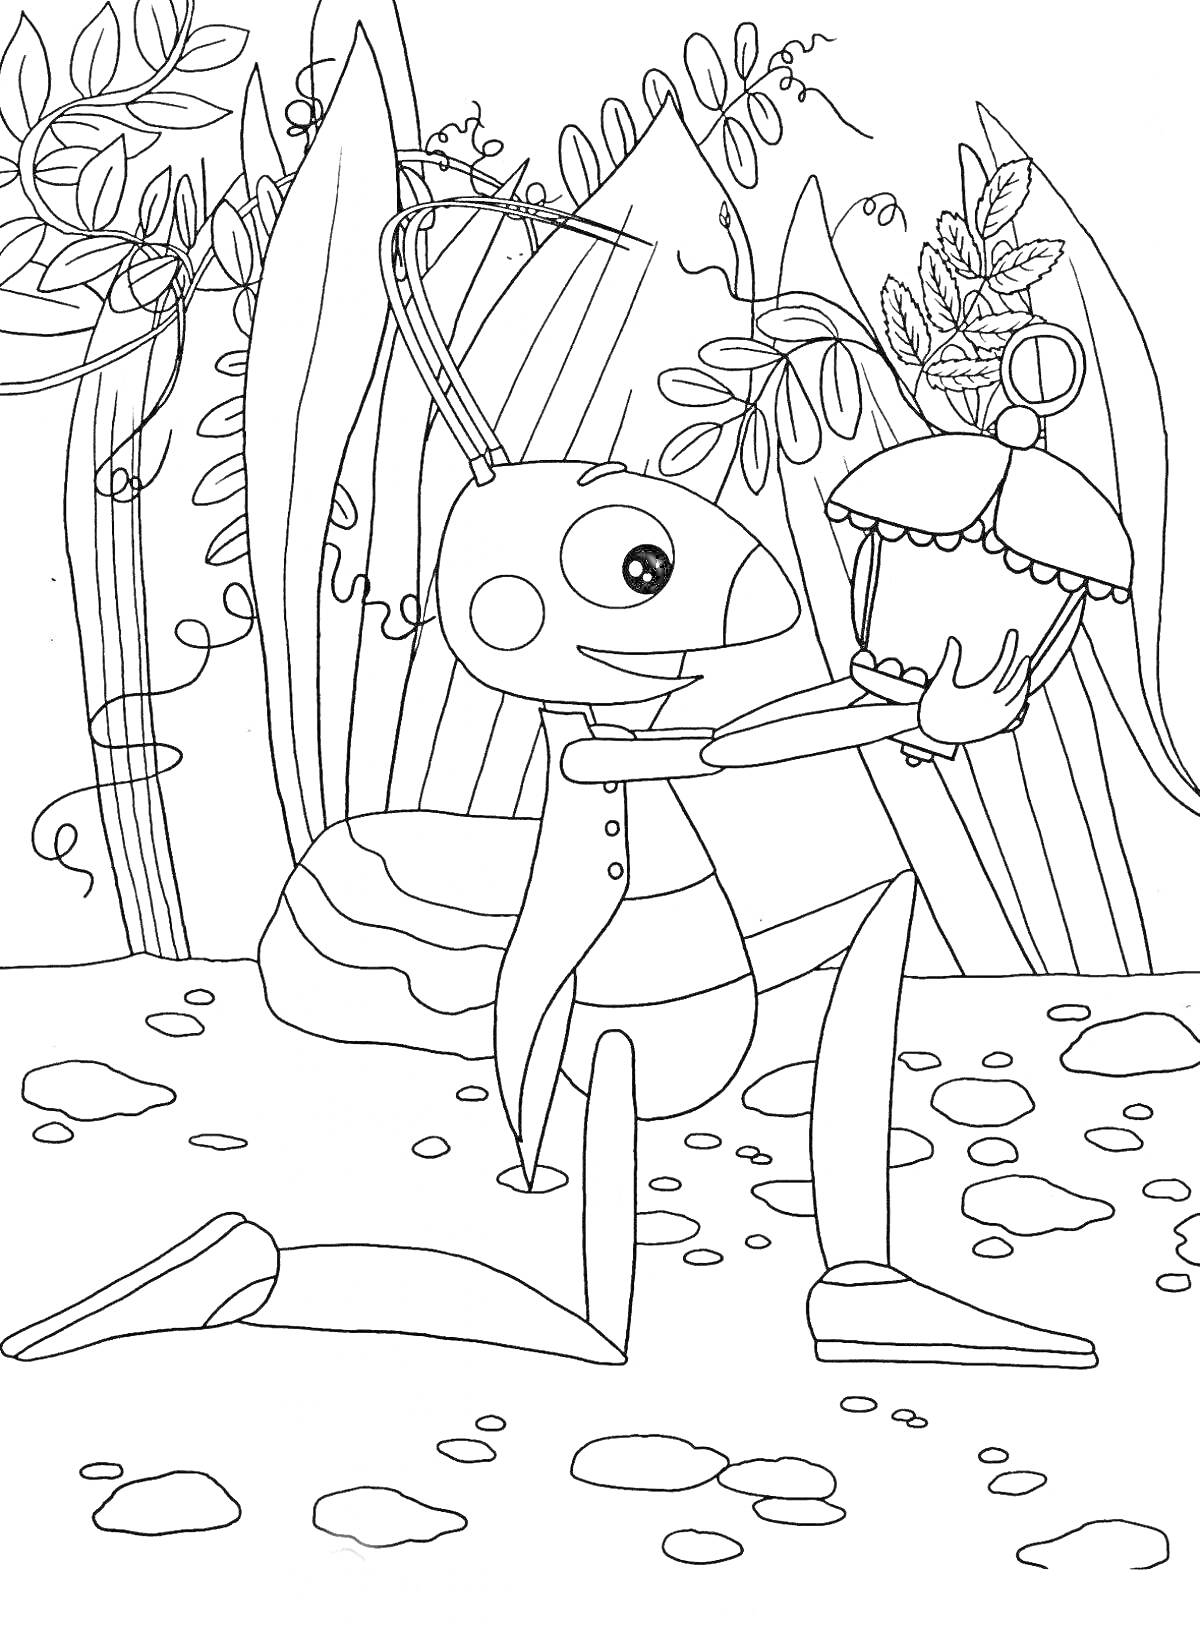 Раскраска Кузя держит украшенный ларец на фоне растений и камней